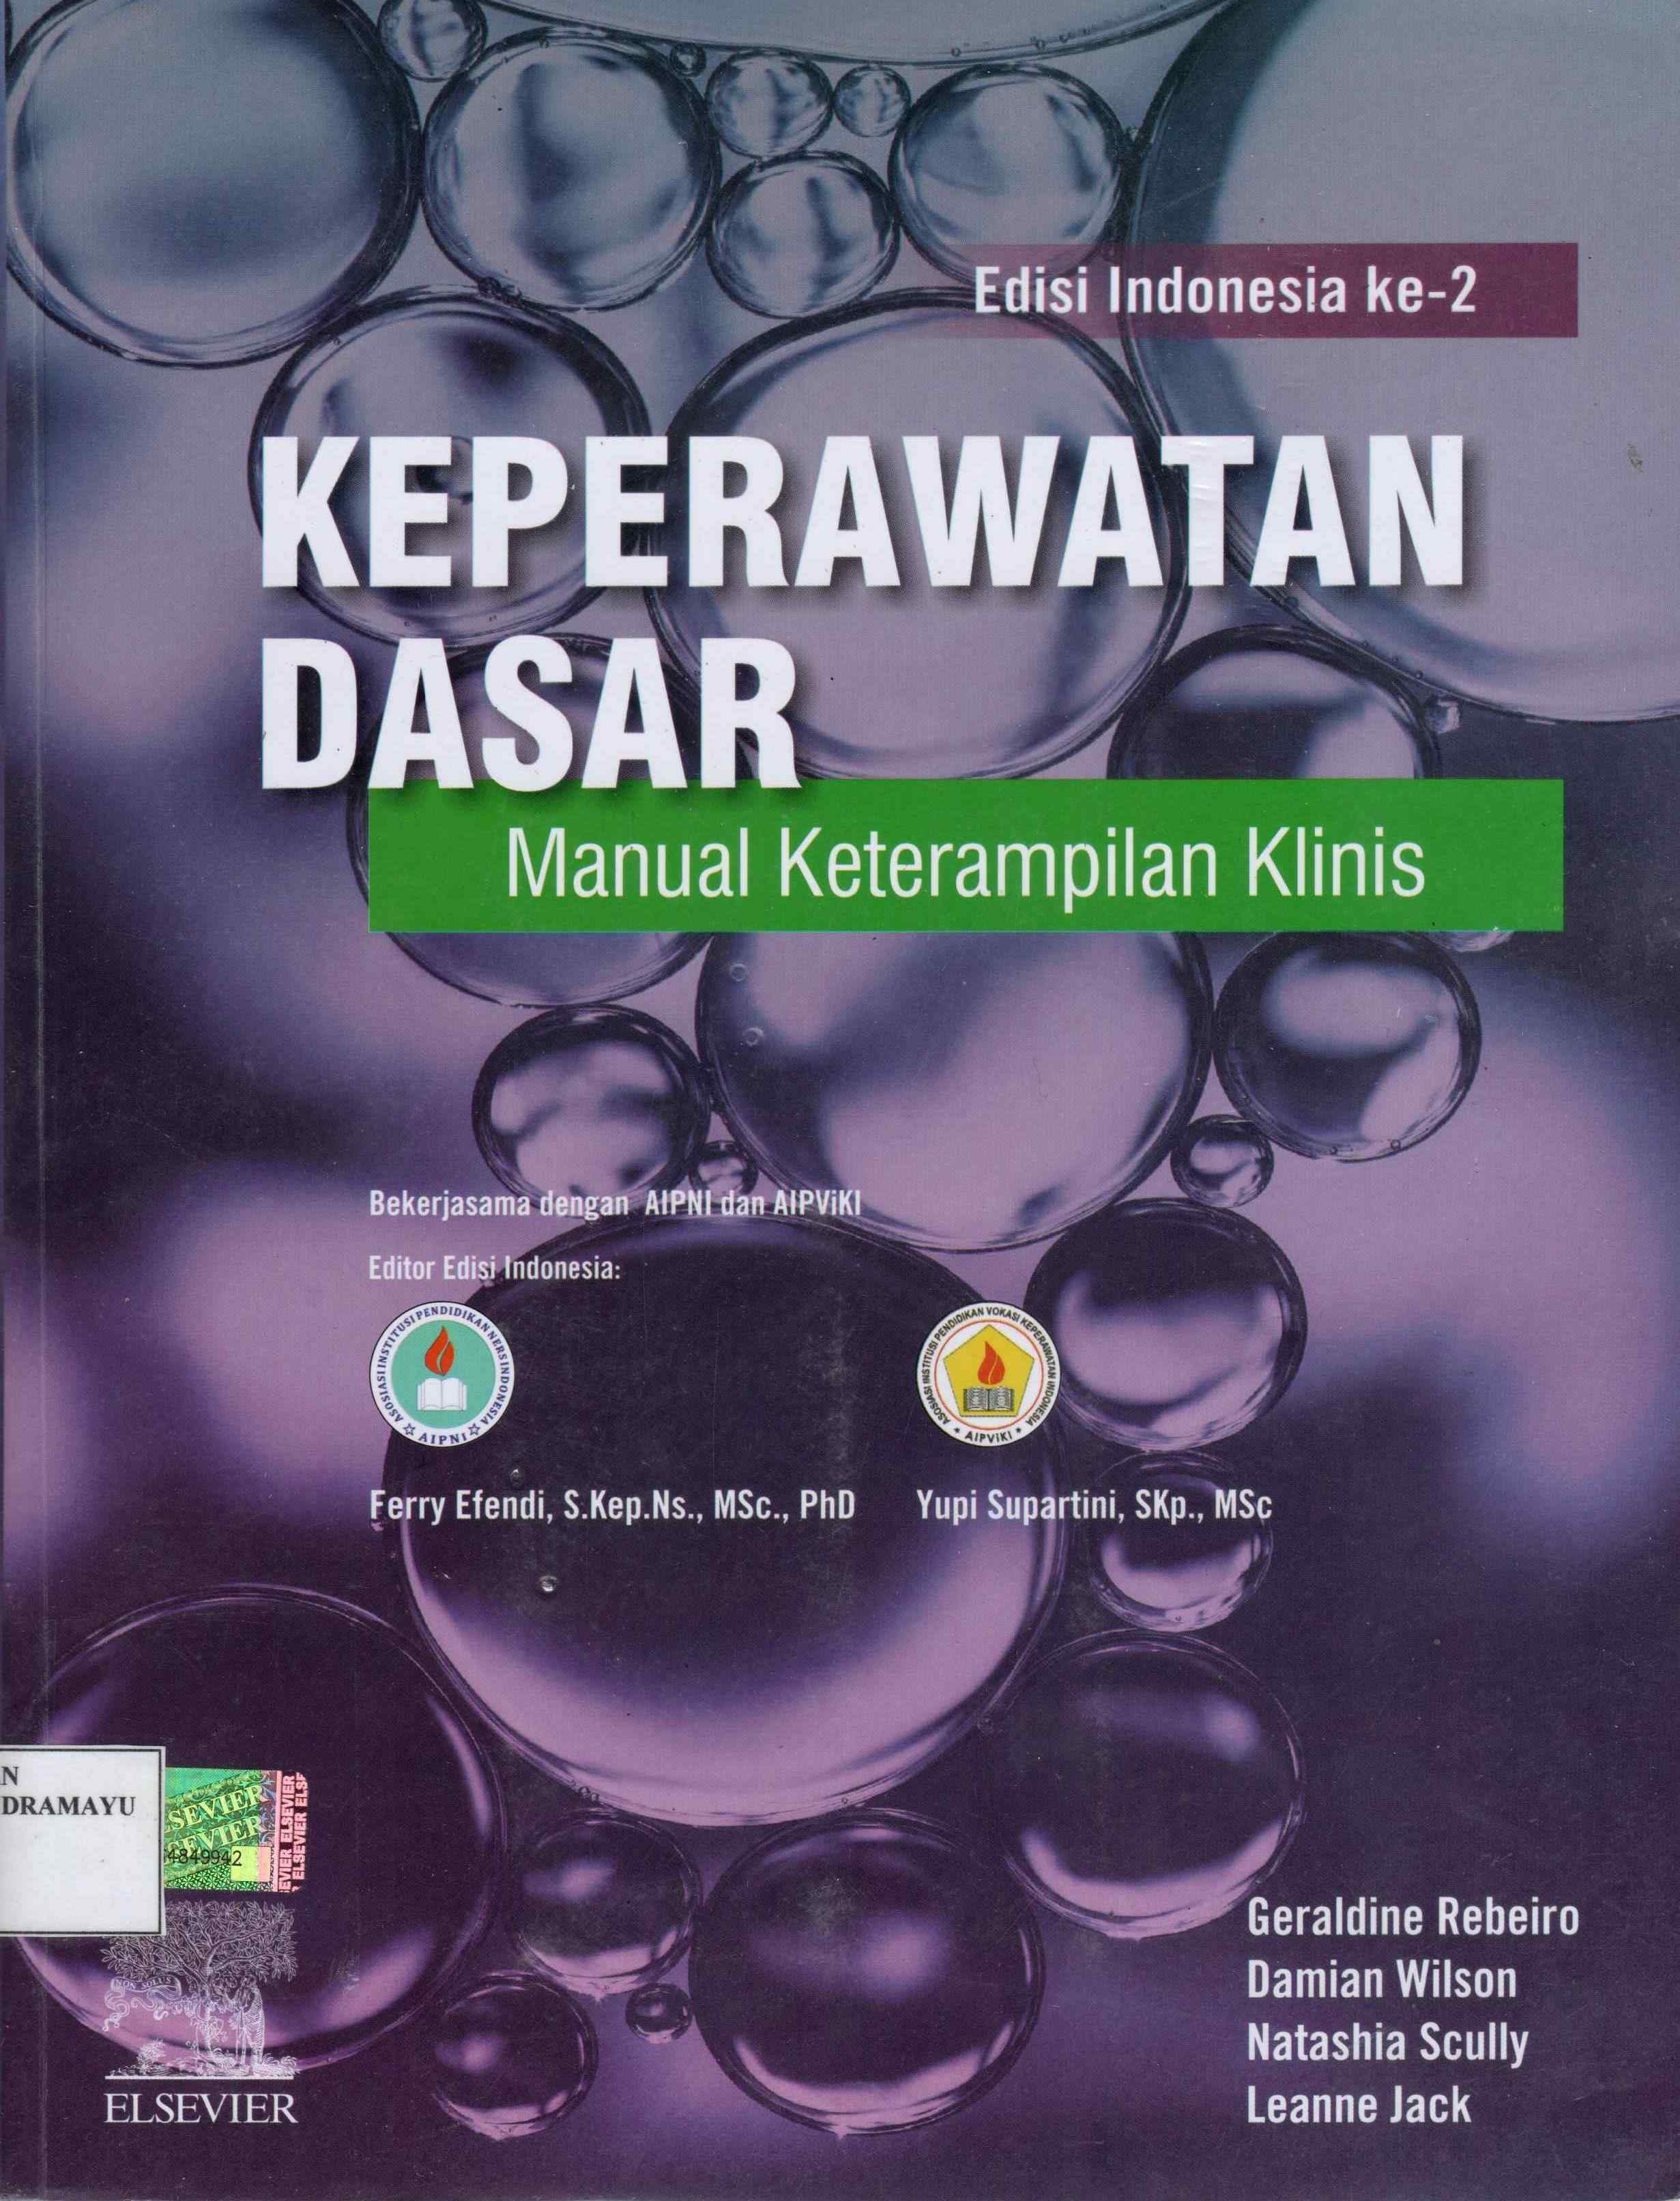 Image of Keperawatan Dasar Manual Keterampilan Klinis